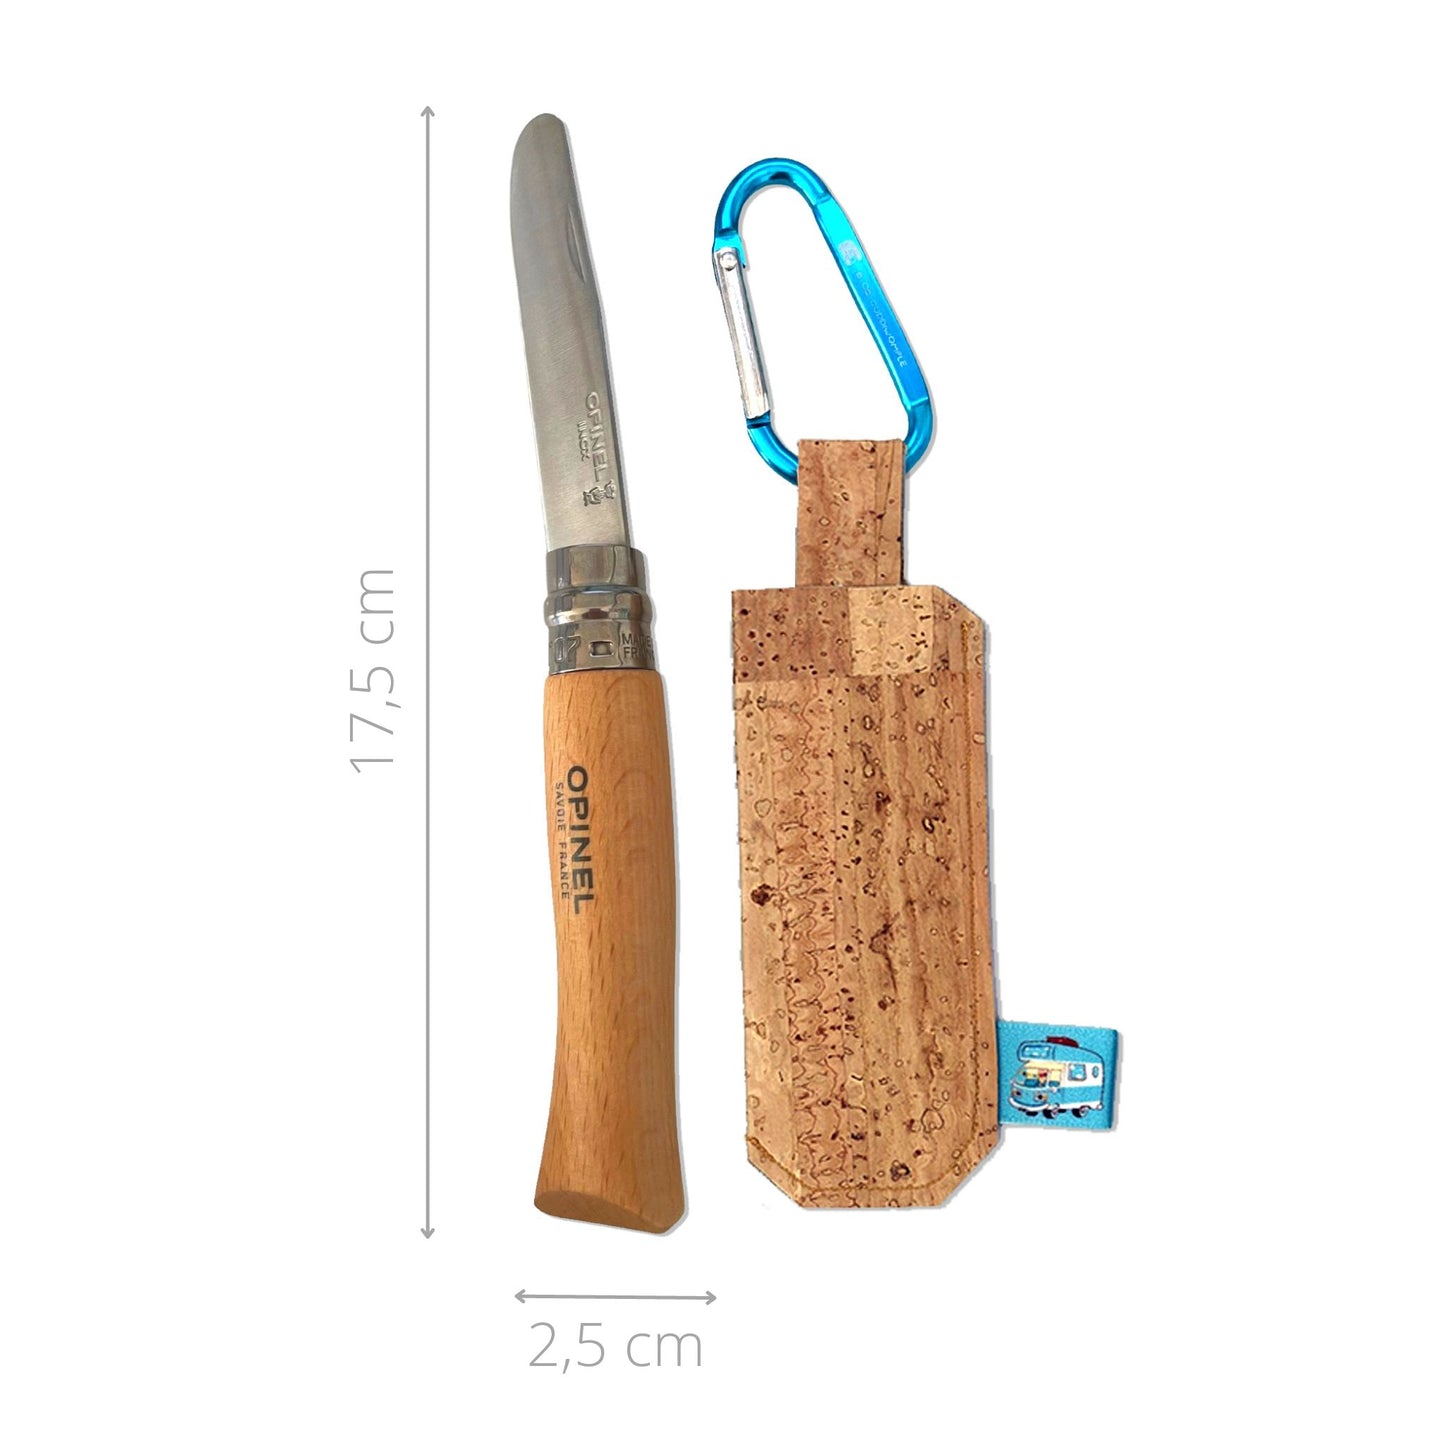 Opinel-Schnitzmesser für Kinder | klappbar | mit Tasche und Karabiner | Edelstahl-Klinge | aus Frankreich | B-OB Coddiwomple